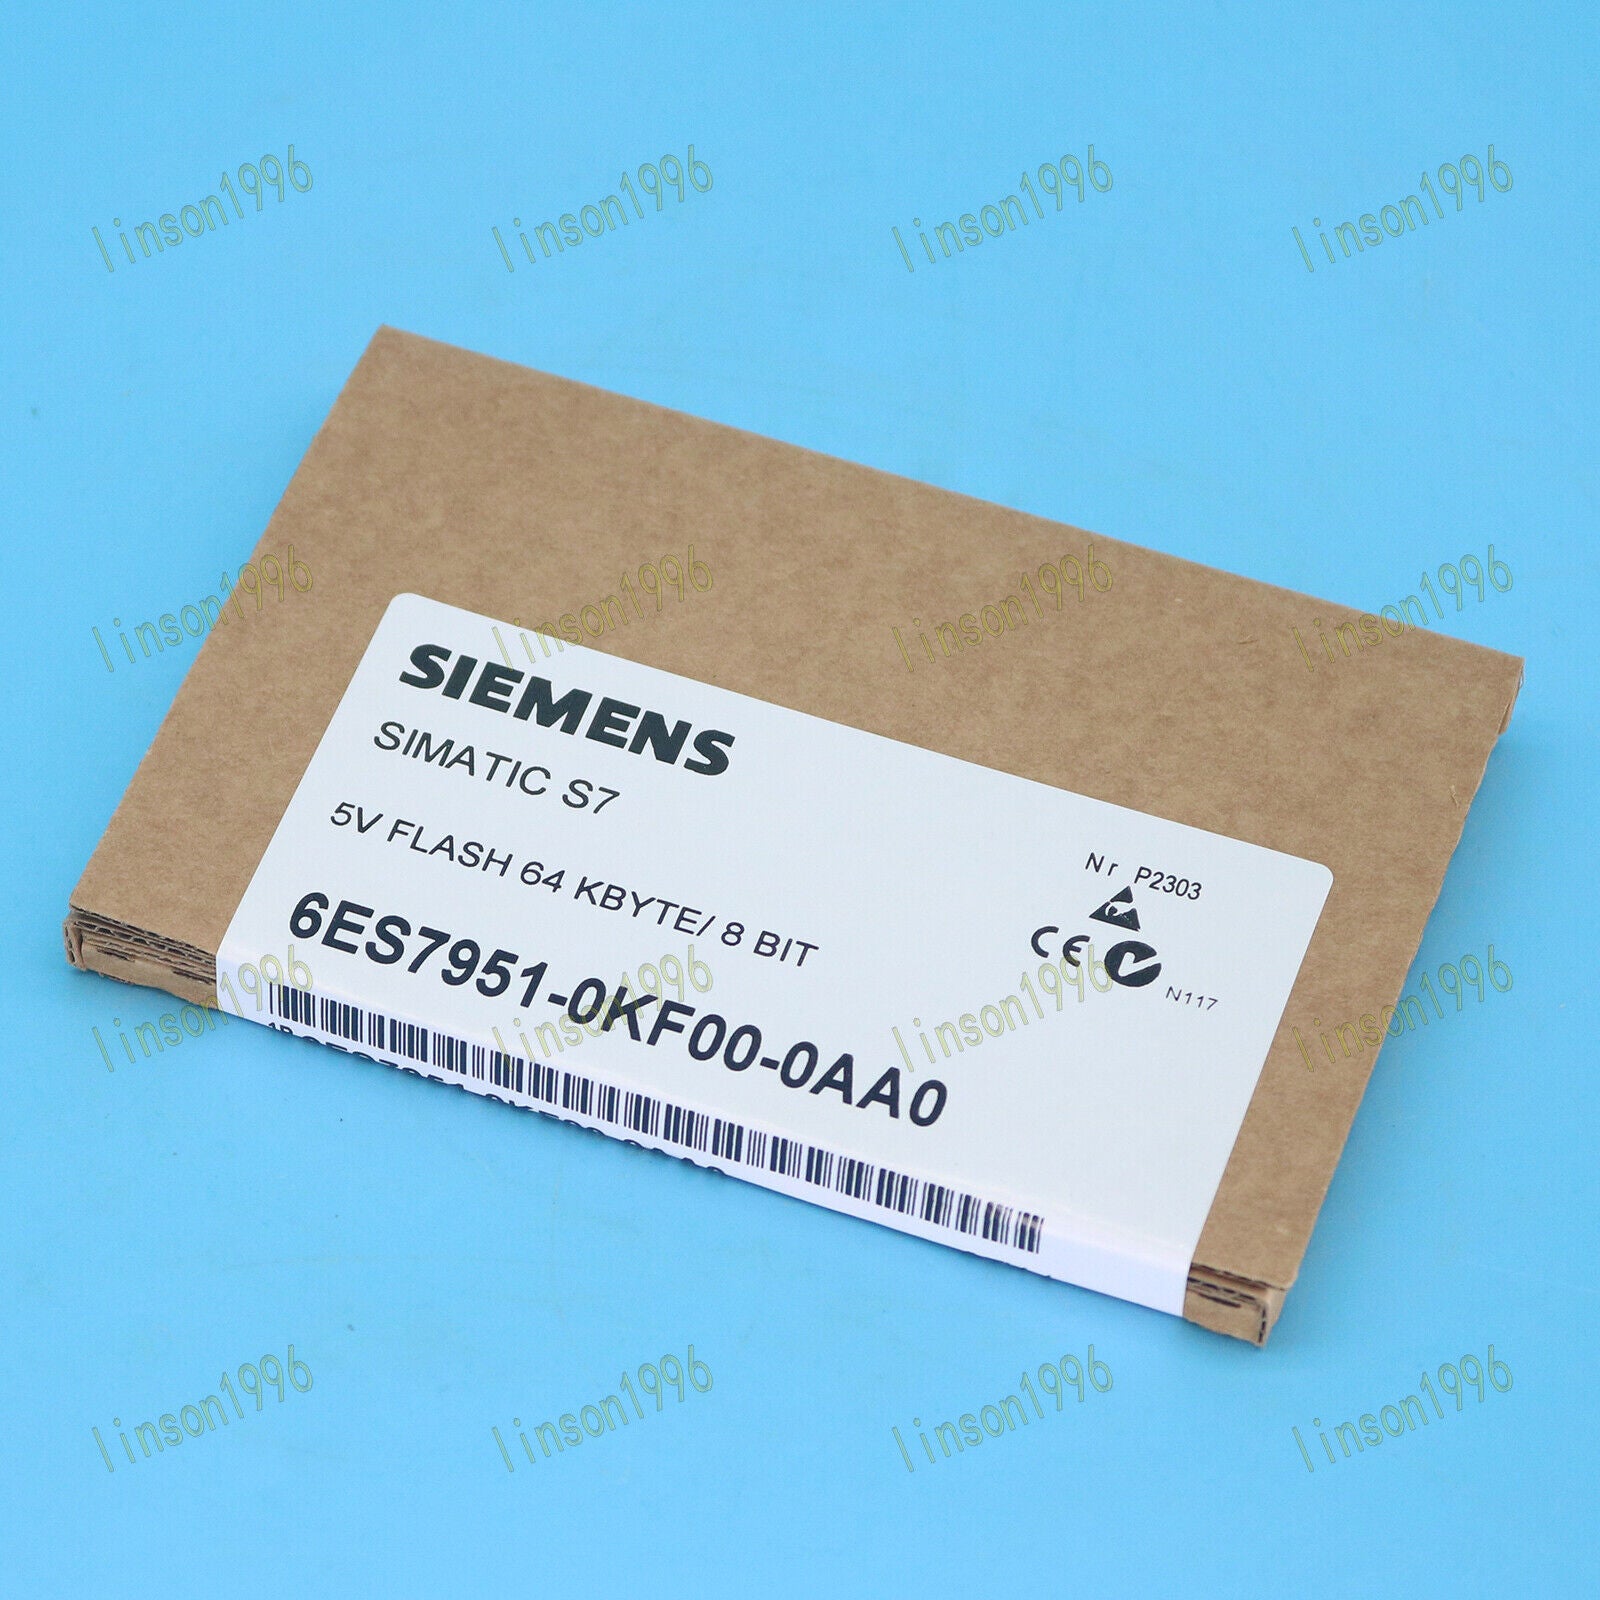 new one  Siemens 6ES7951-0KF00-0AA0 6ES7 951-0KF00-0AA0 in box ship